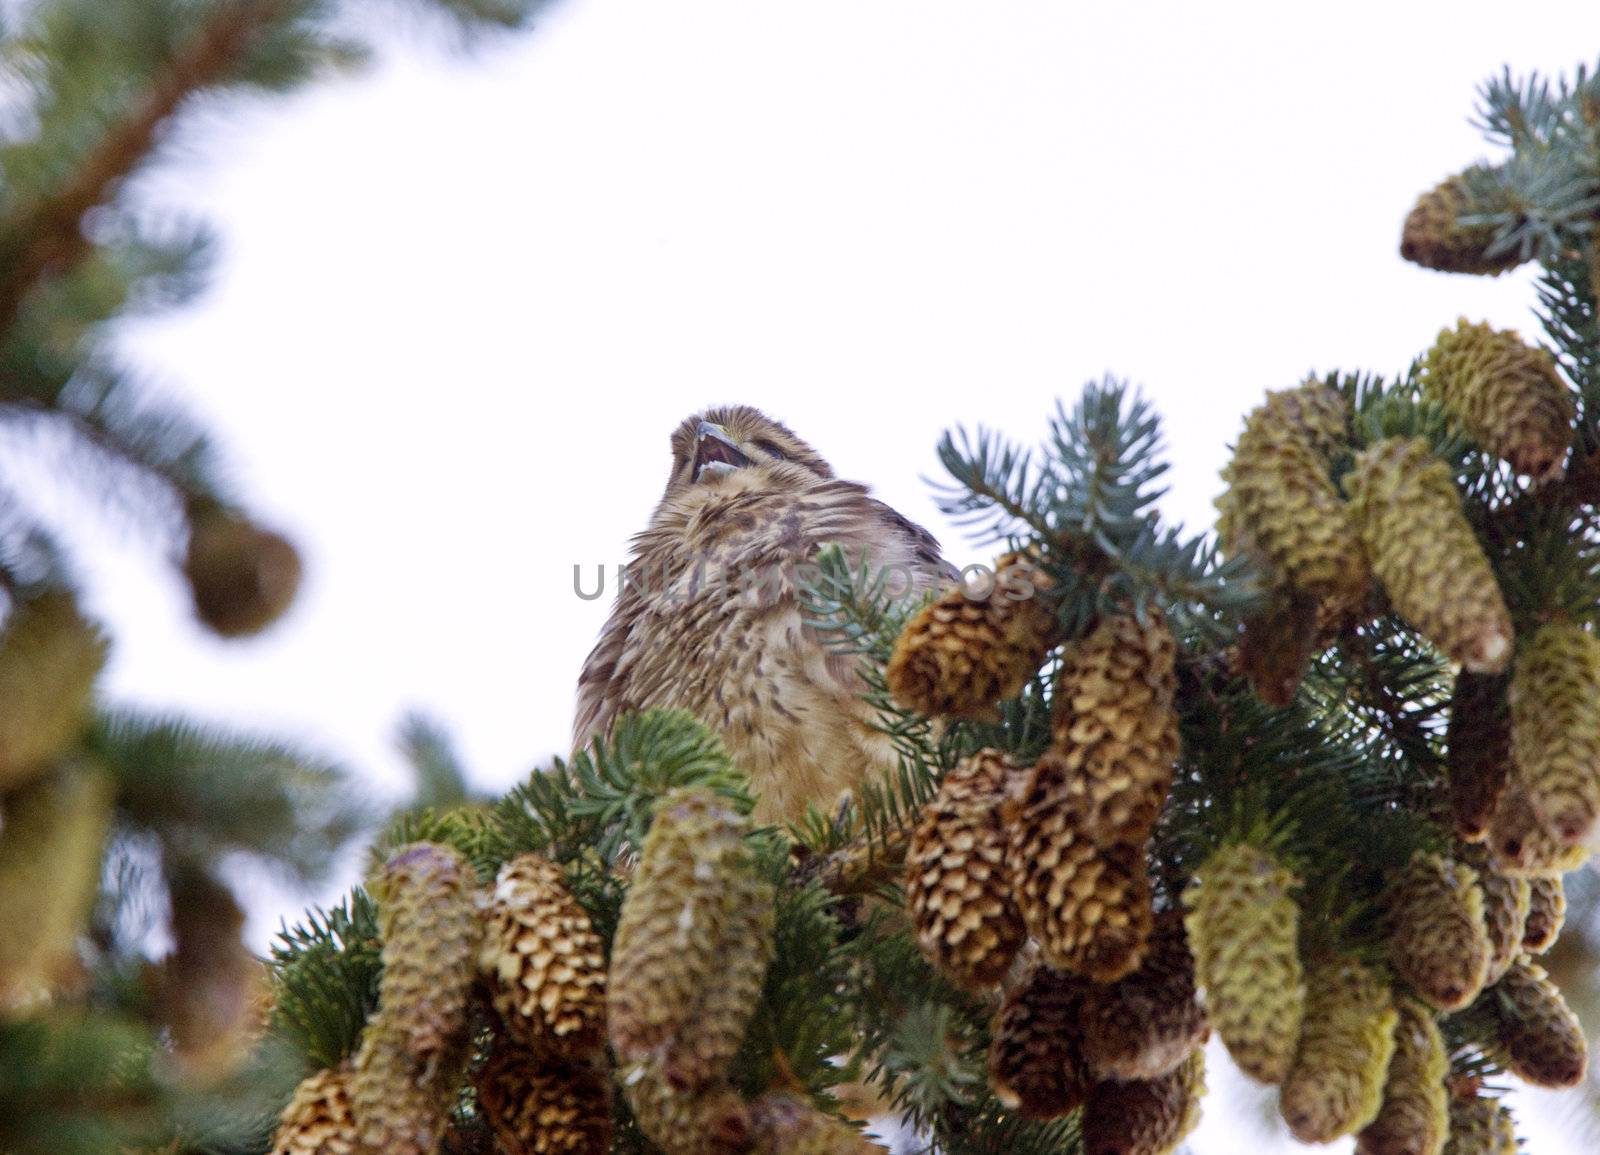 Hawk fledling in pine tree by pictureguy